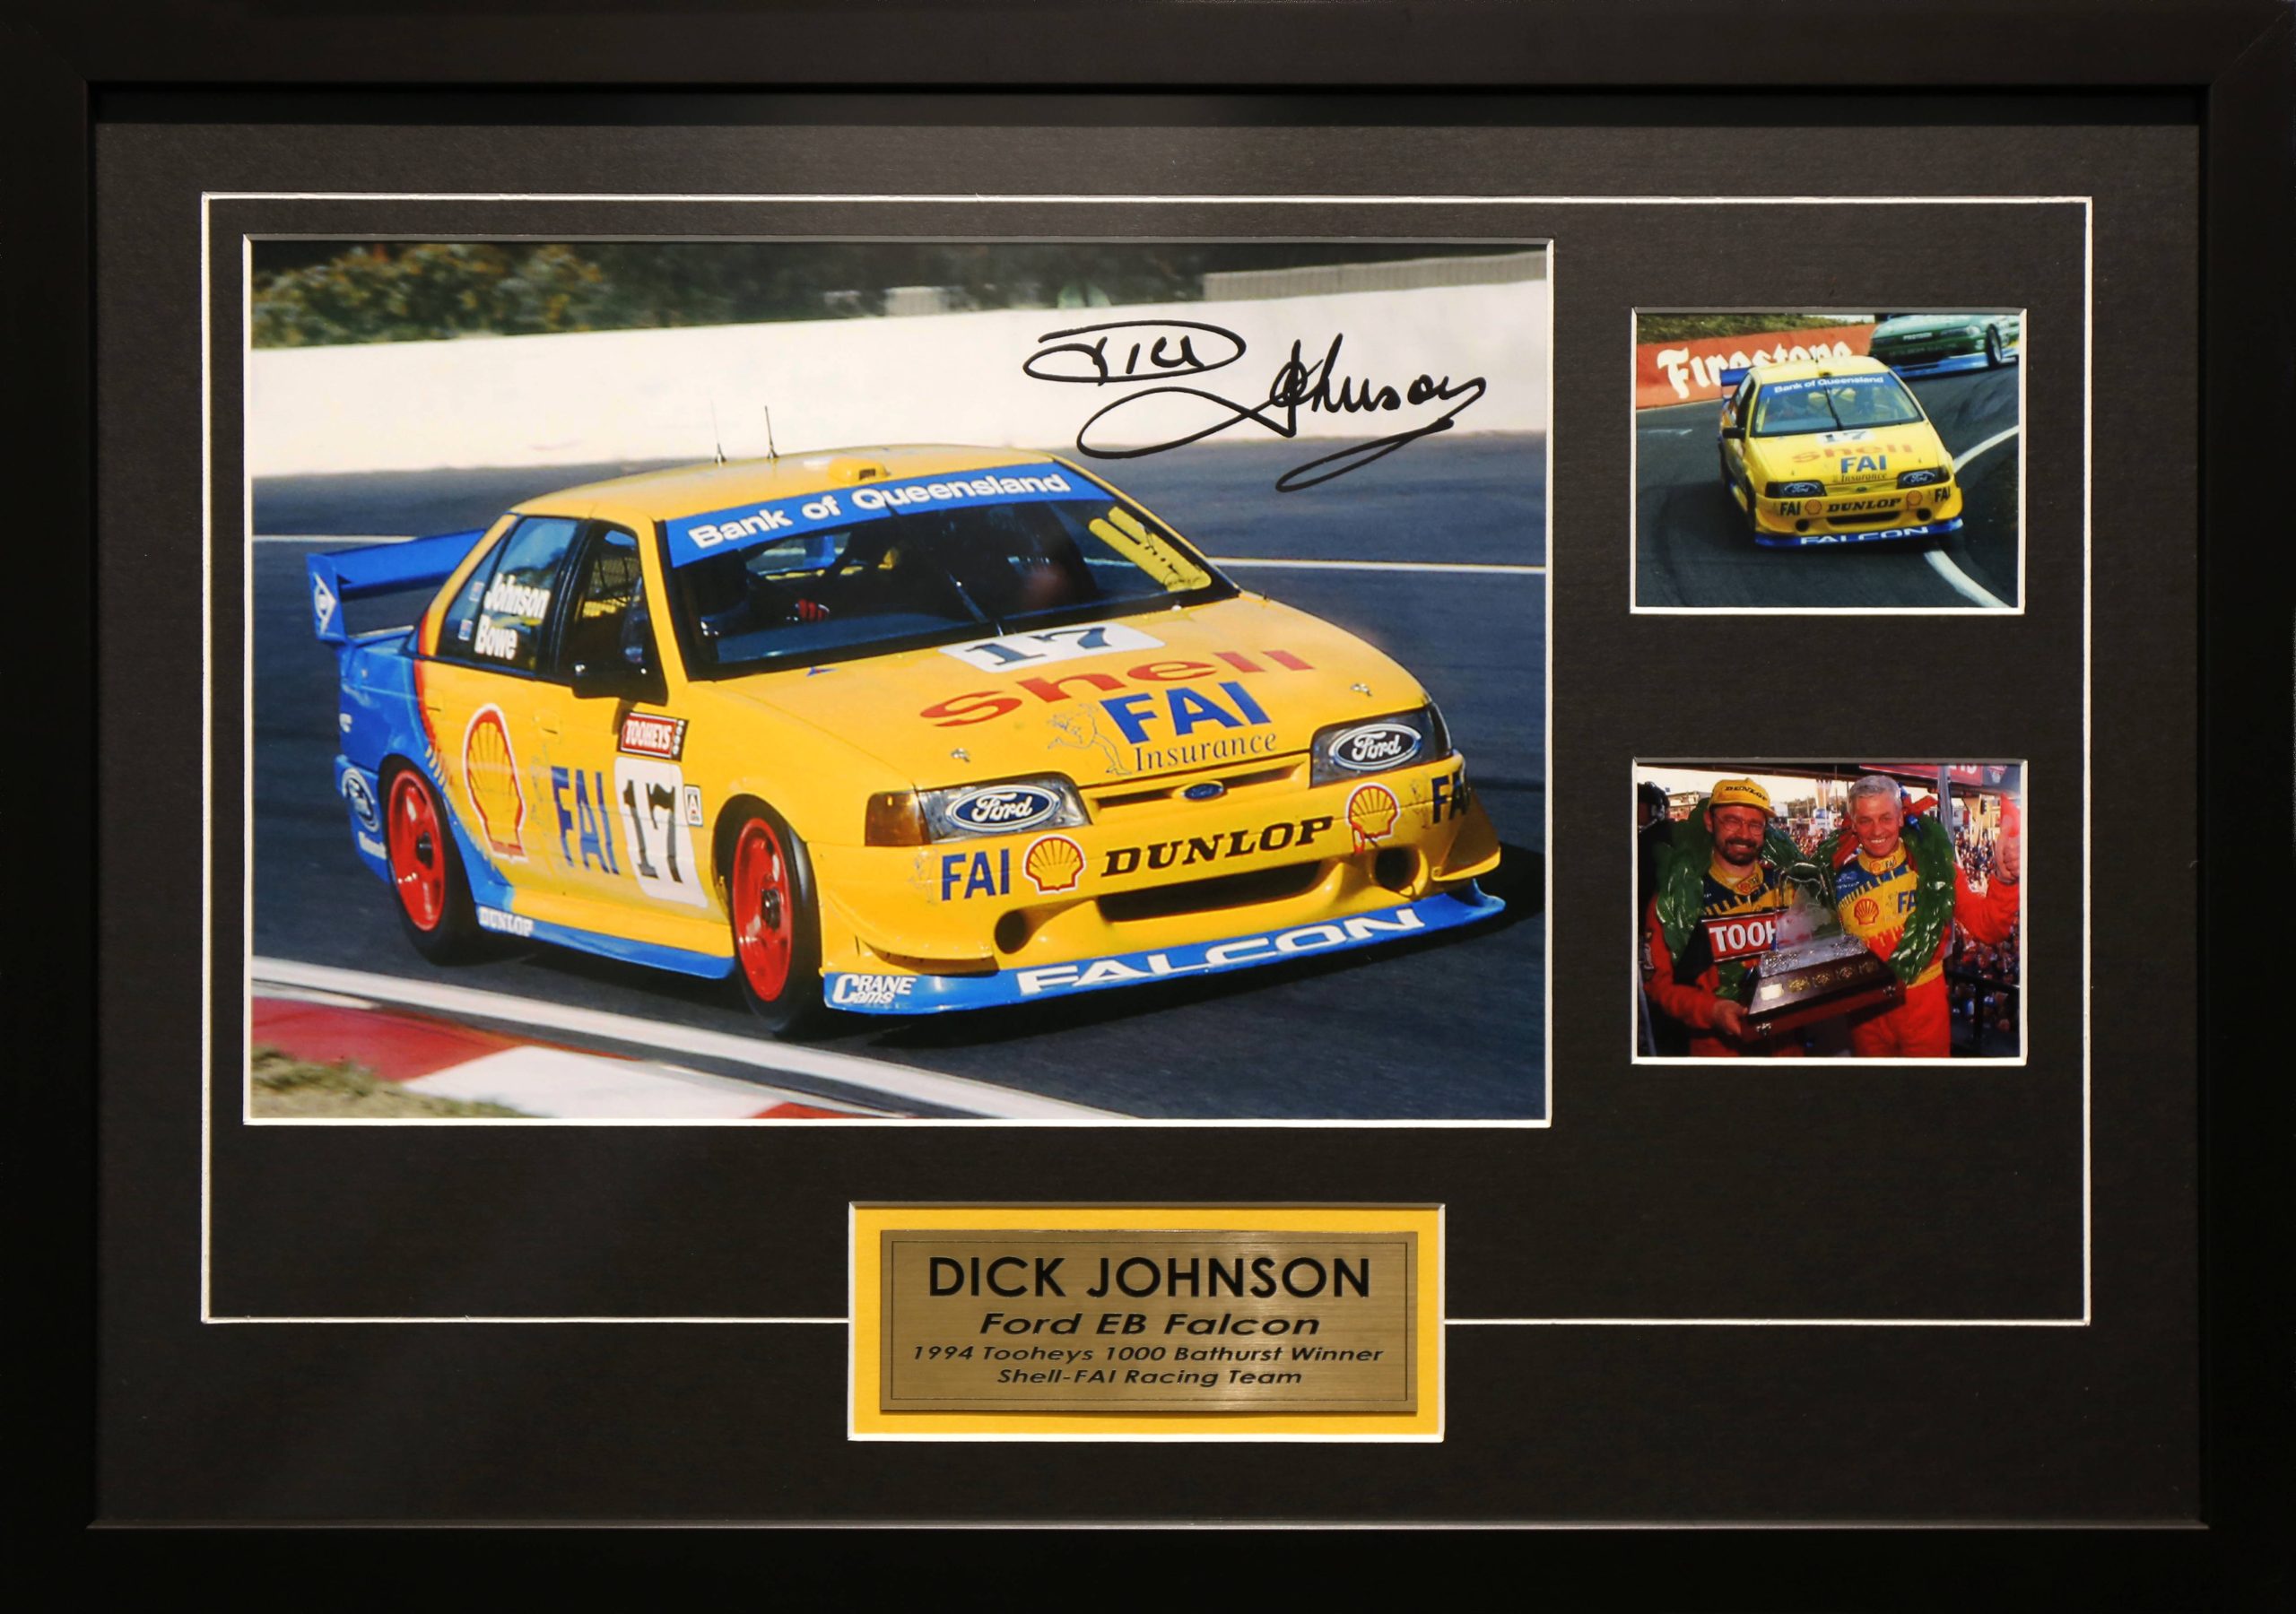 Dick Johnson Signed & Framed Motor Racing Memorabilia. Bathurst 1994 Ford EB Falcon Winner.